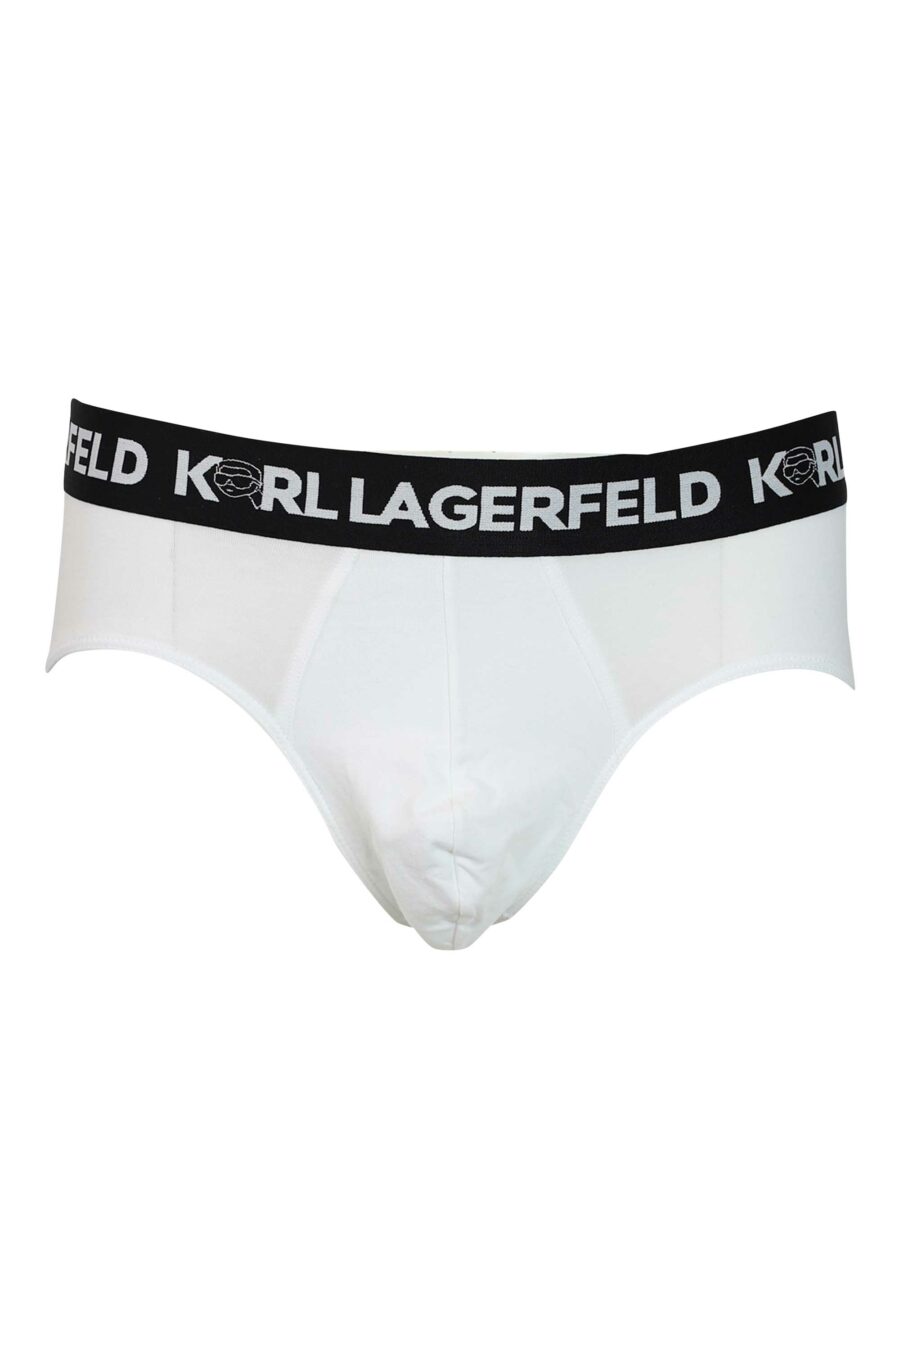 Pack de tres calzoncillos negros y blancos con logo "karl" en cinturilla - 8720744054627